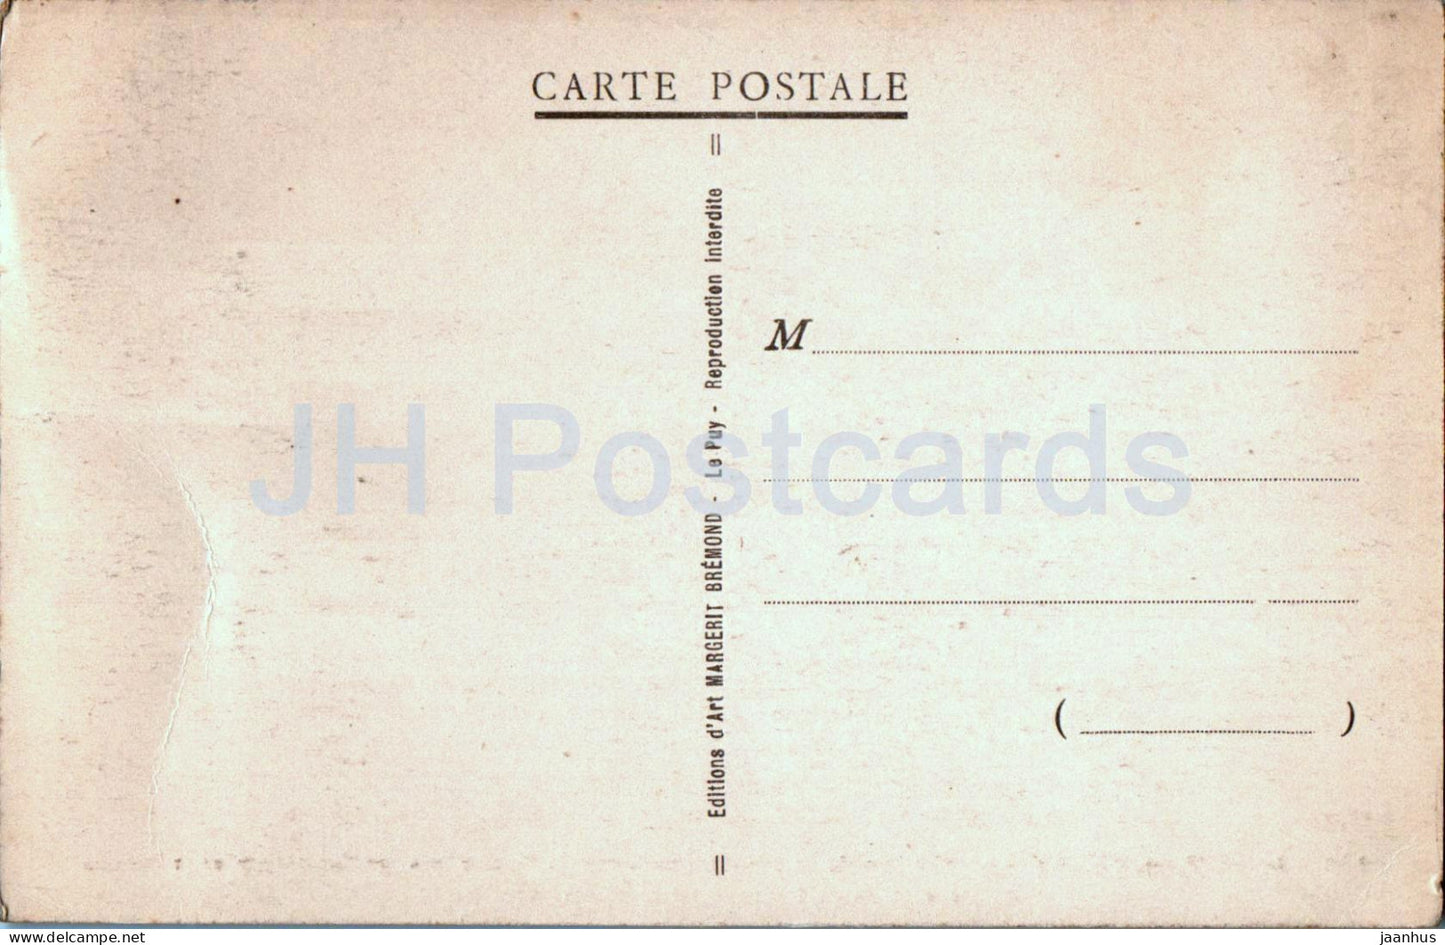 Le Puy en Velay - Le Viaduc de la Chartreuse sur la Borne - Viadukt - Eisenbahn - 1128 - alte Postkarte - Frankreich - unbenutzt 